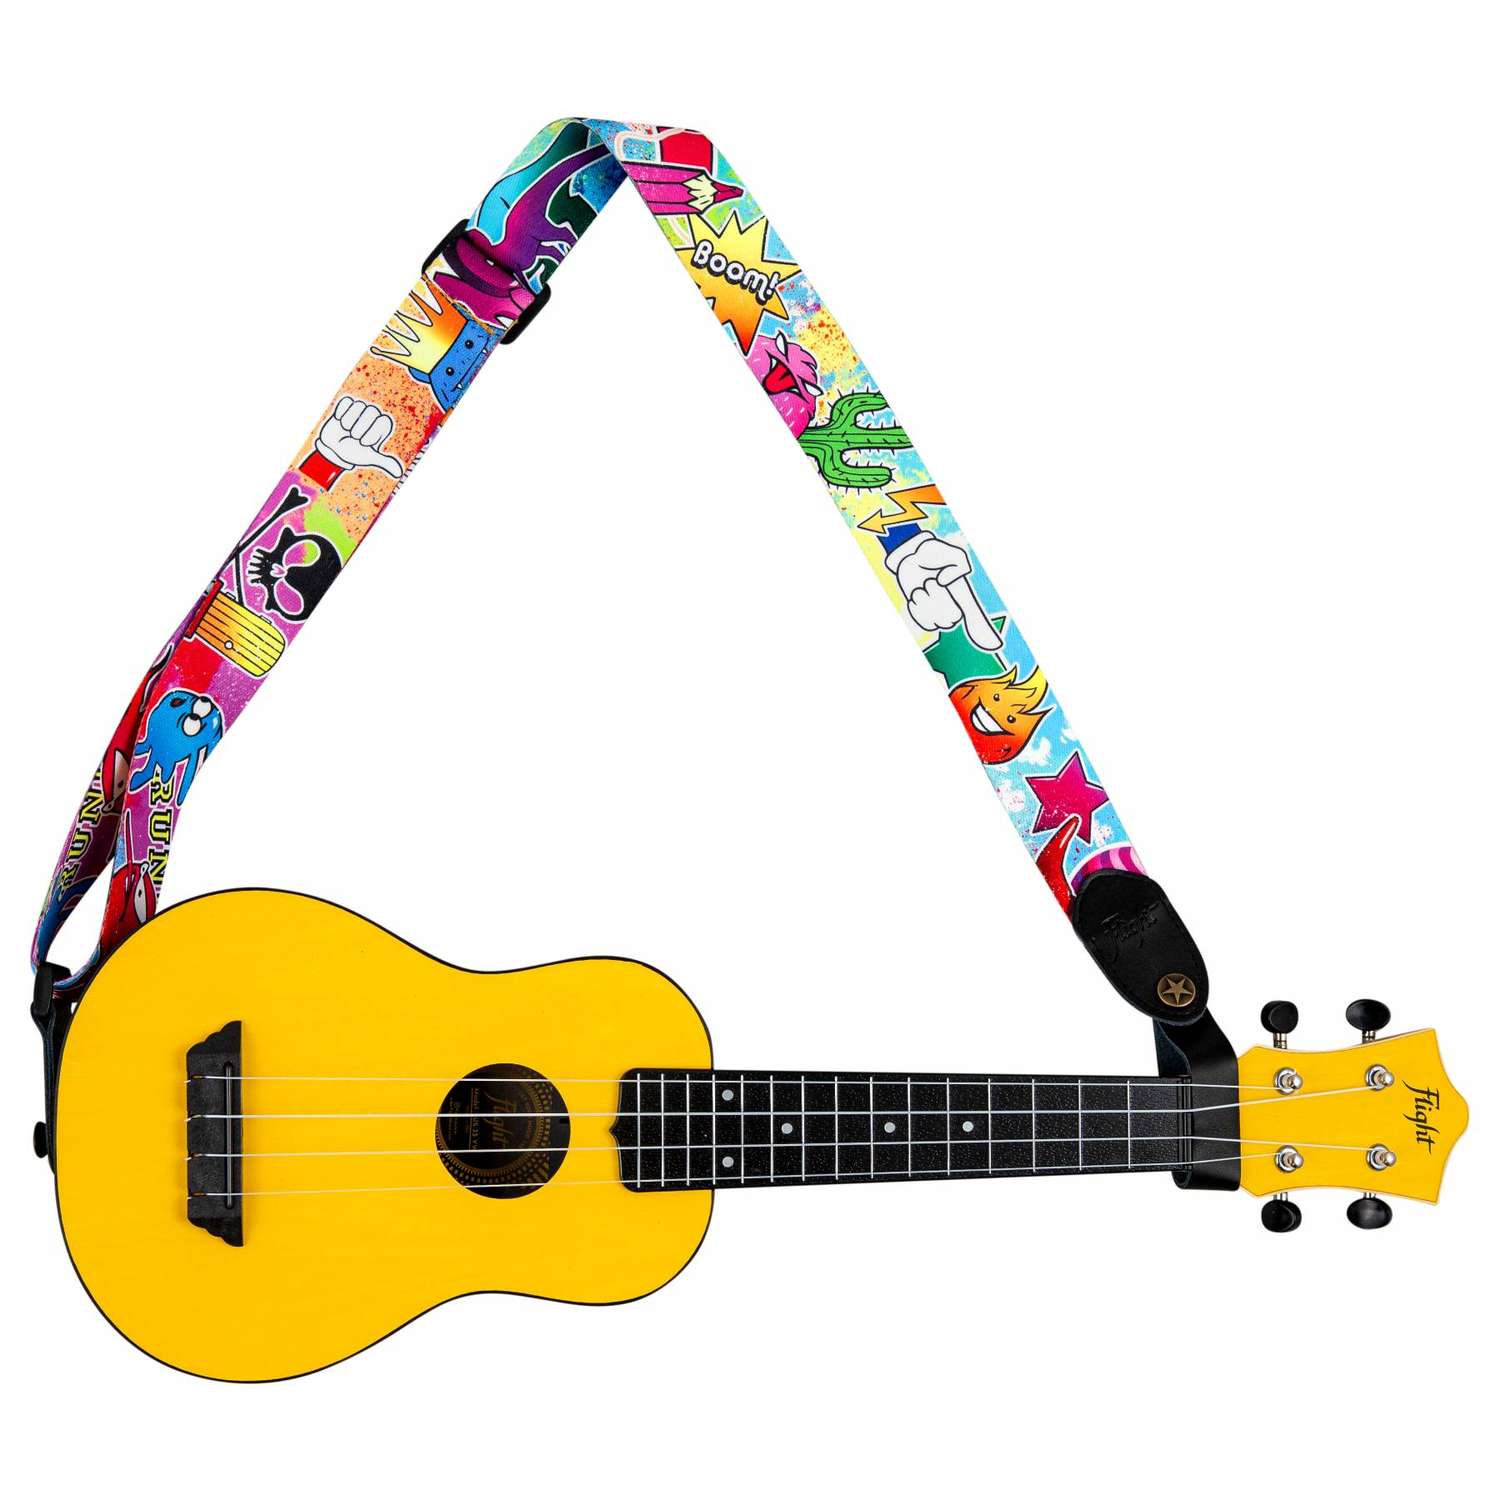 Ремень Flight S35 WOW для гавайской гитары укулеле материал полипропилен яркий с комиксами - фото 4